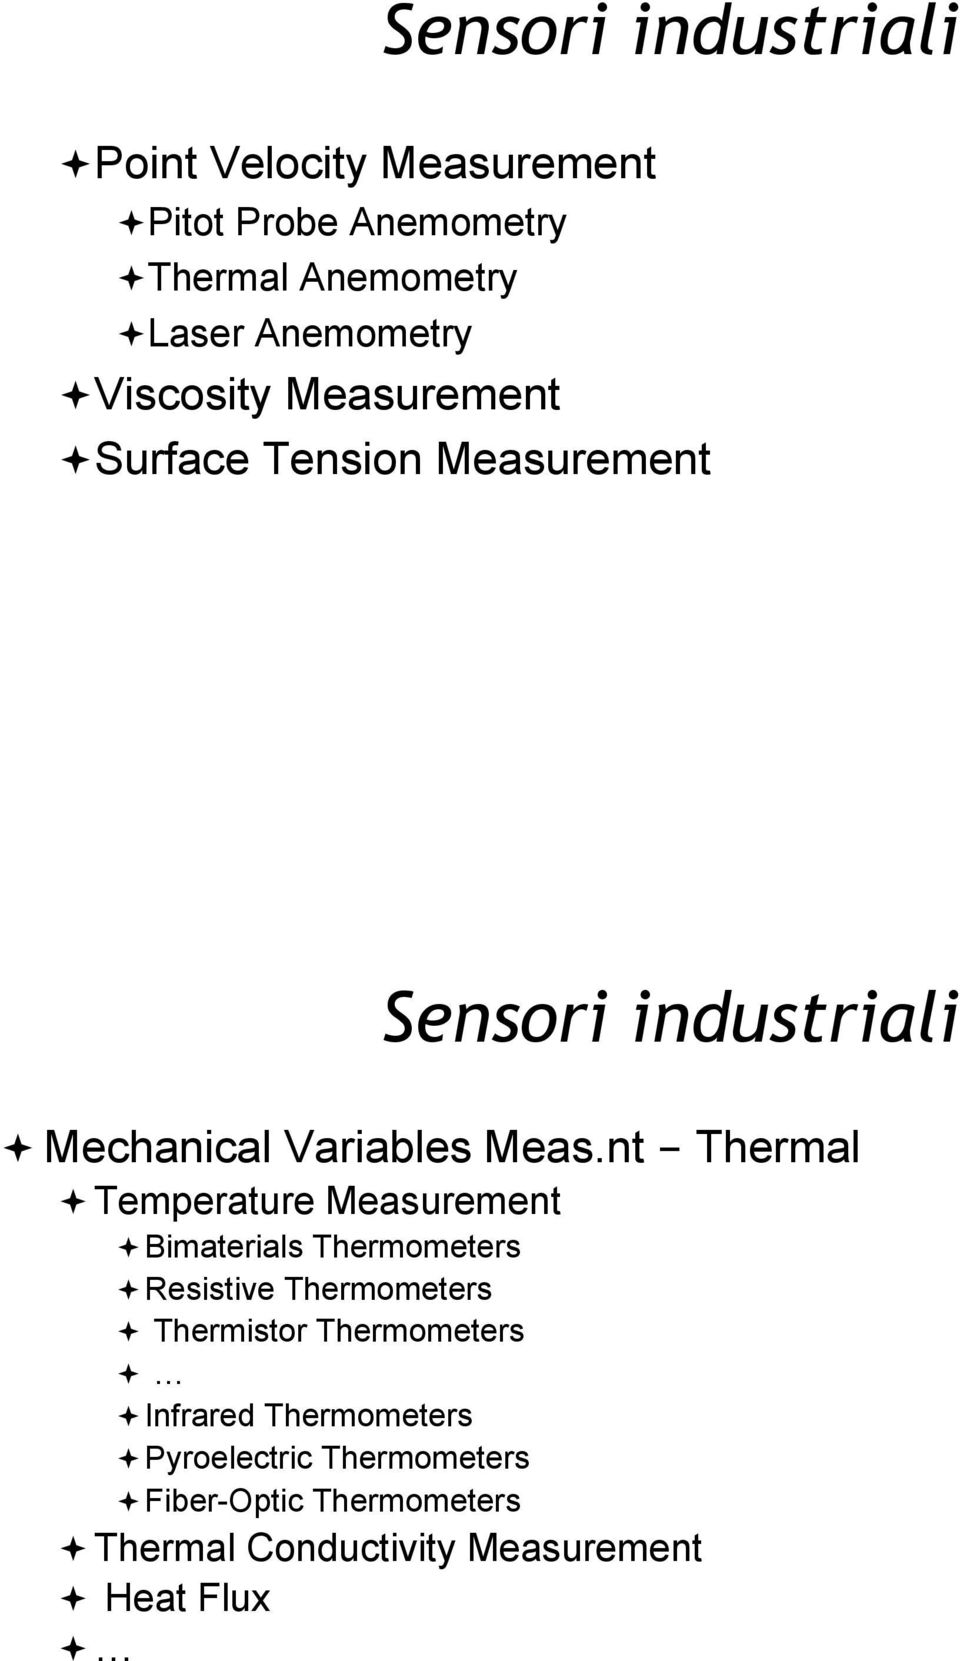 Temperature Measurement! Bimaterials Thermometers! Resistive Thermometers! Thermistor Thermometers!